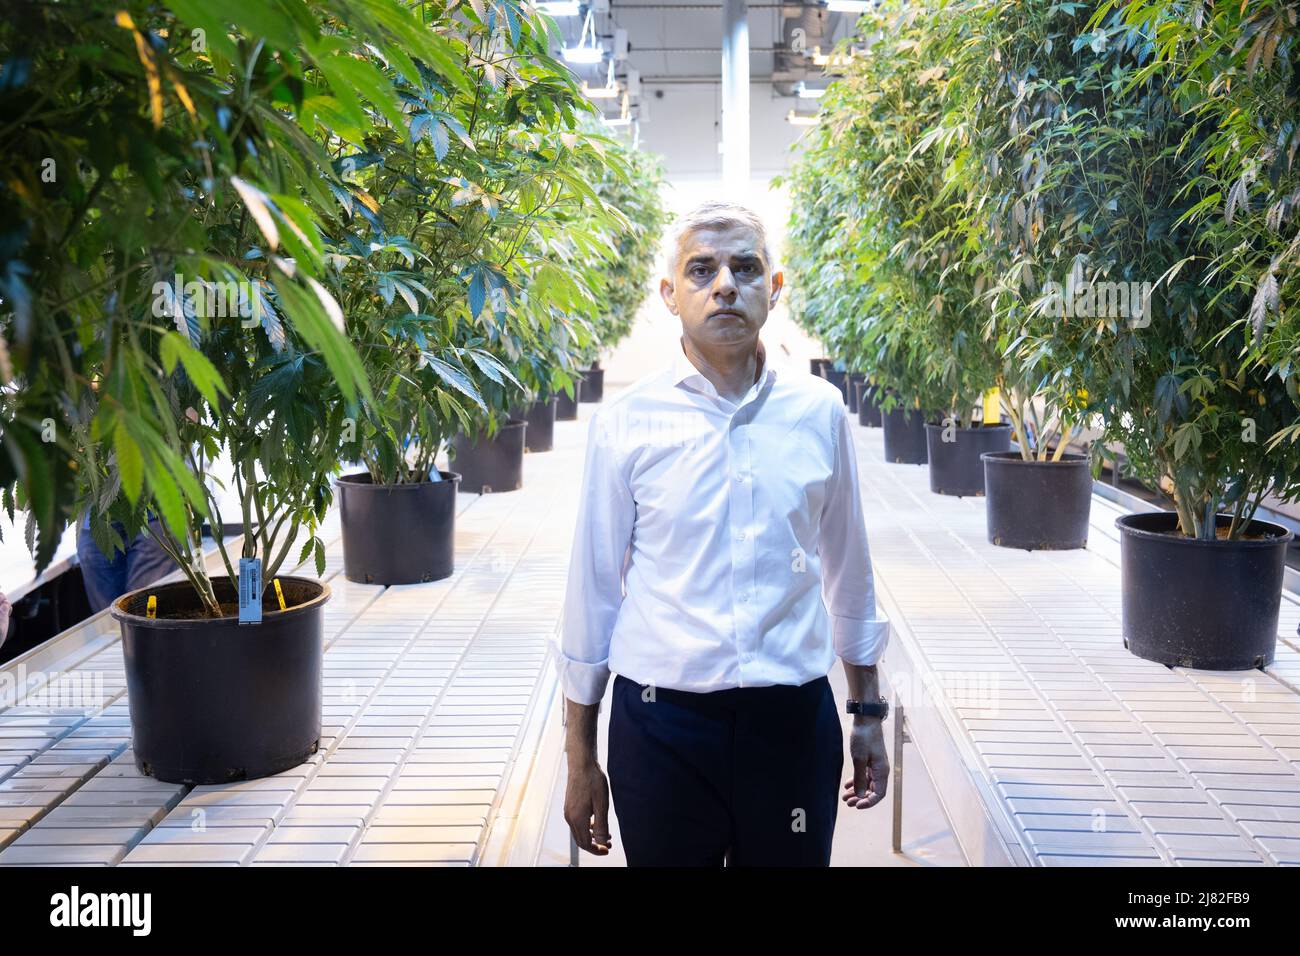 El alcalde de Londres Sadiq Khan camina por plantas de cannabis que están siendo legalmente cultivadas en 'Traditional' una fábrica licenciada en Los Ángeles donde el alcalde estaba viendo por sí mismo cómo funciona la producción legalizada de cannabis en California el día 3 de una visita prevista de 5 días a los Estados Unidos. Fecha de la foto: Miércoles 11 de mayo de 2022. Foto de stock